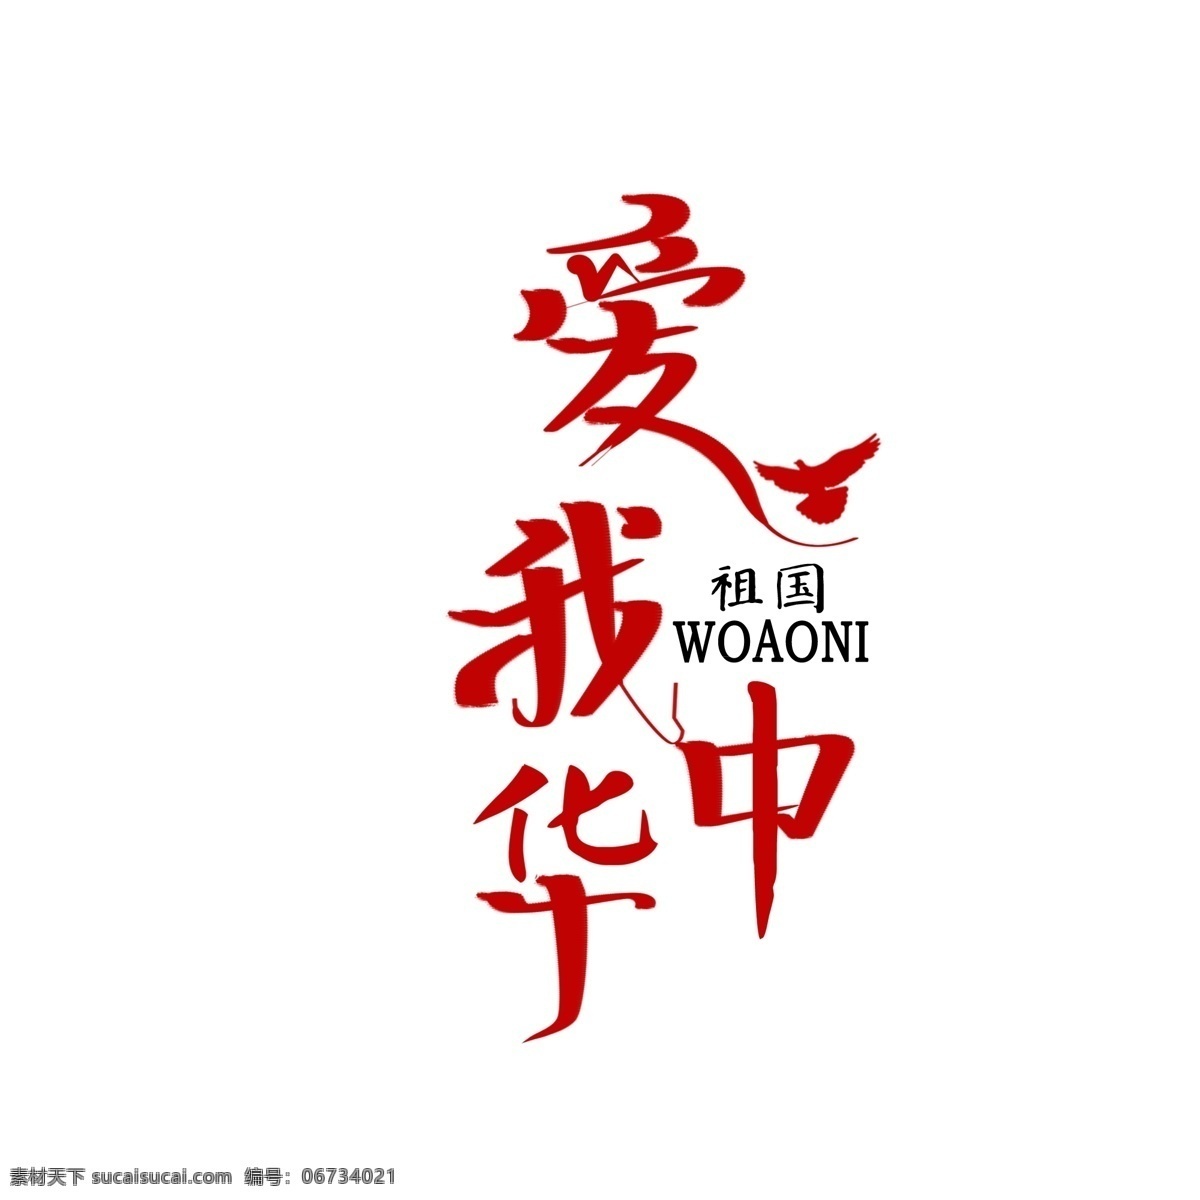 爱 中华 手绘 创意 字体 爱国 祖国 创意字体设计 红色 白鸽 爱我中华 手绘字体